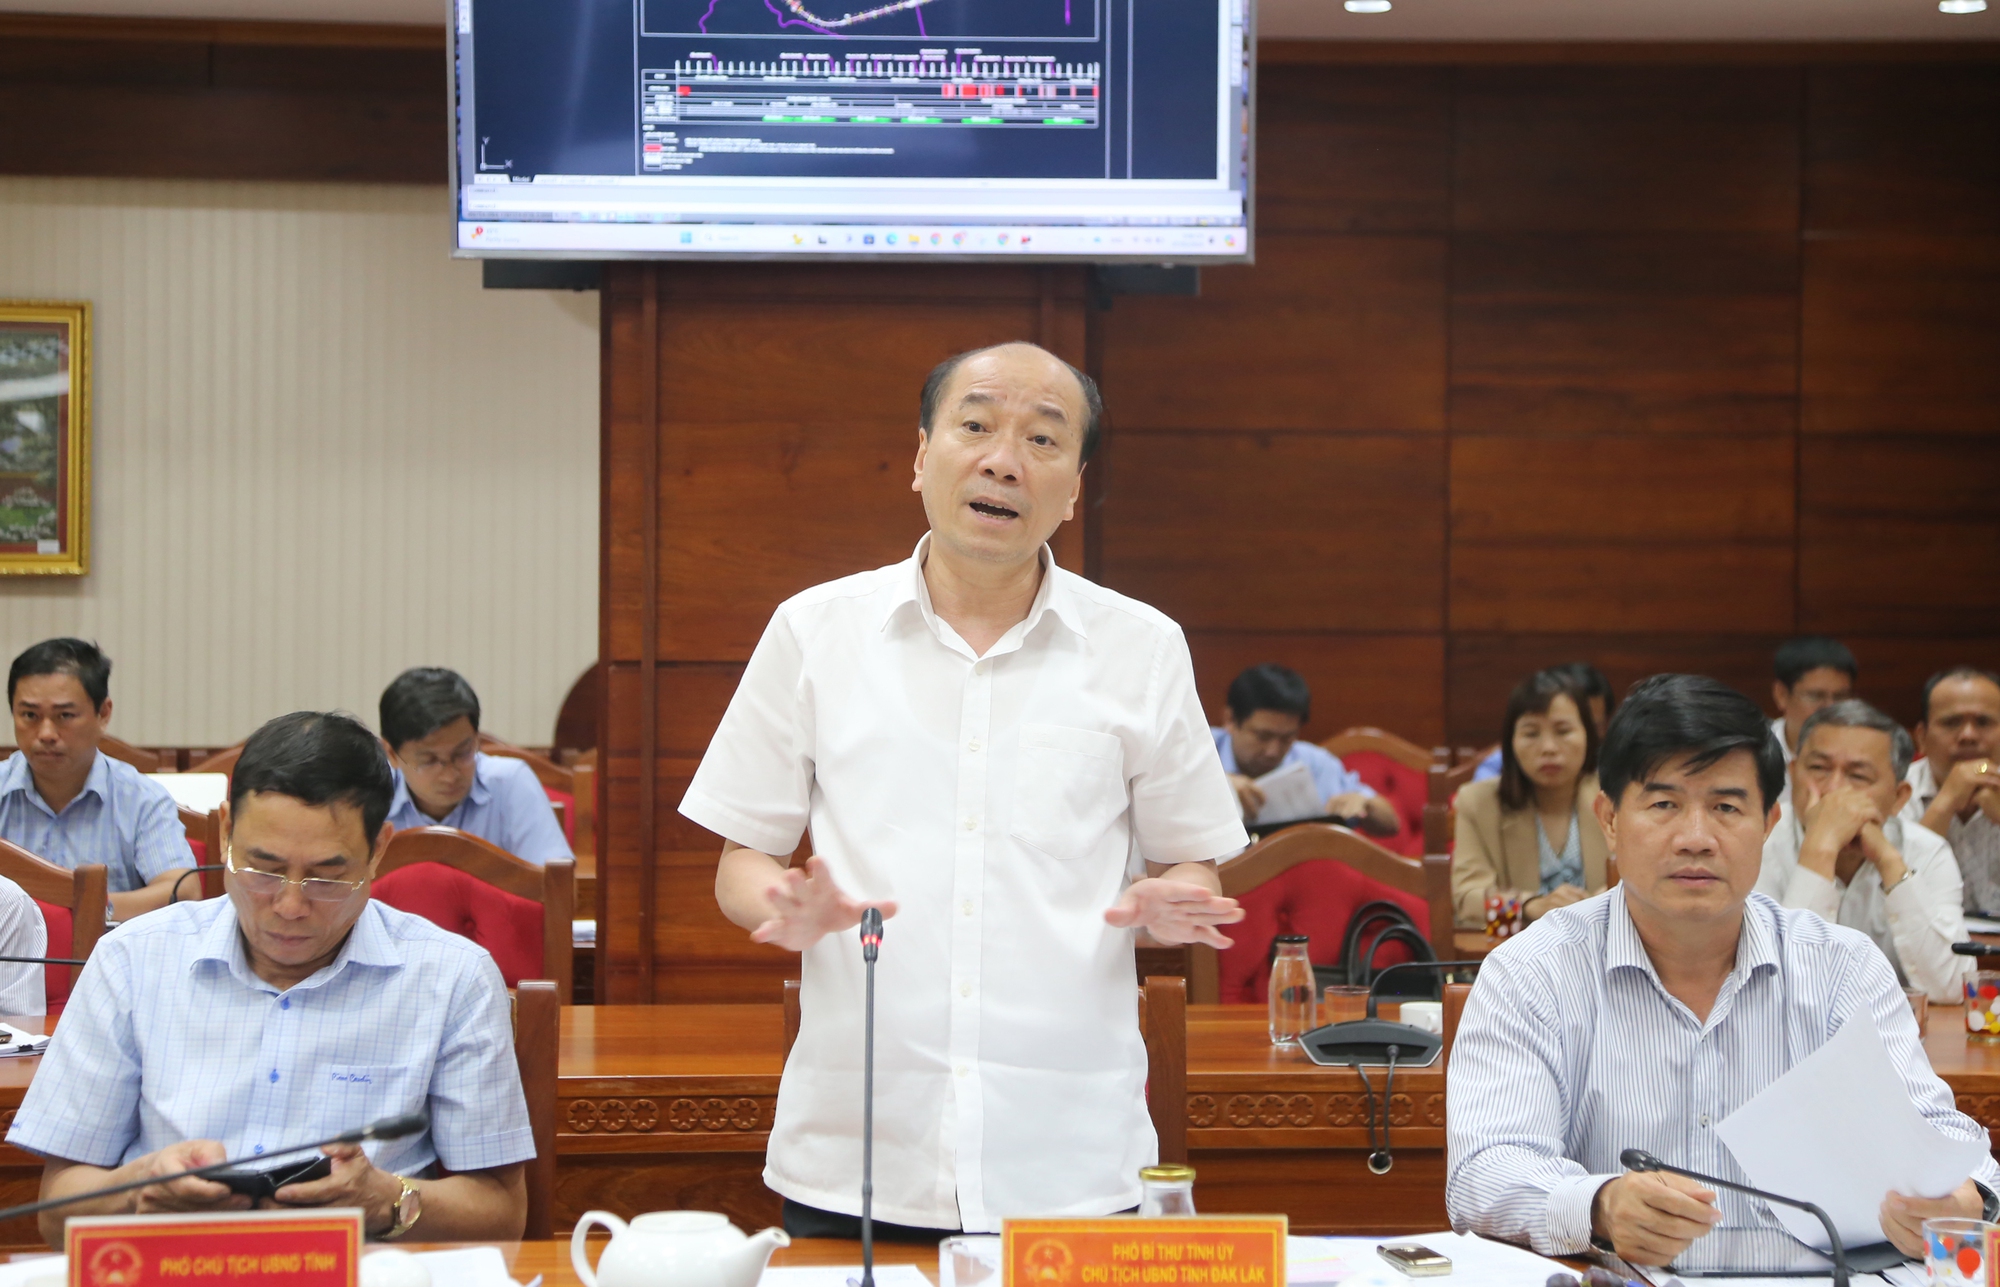 Chủ tịch Đắk Lắk sốt ruột việc cấp phép bãi đổ thải cao tốc Khánh Hòa - Buôn Ma Thuột - Ảnh 2.